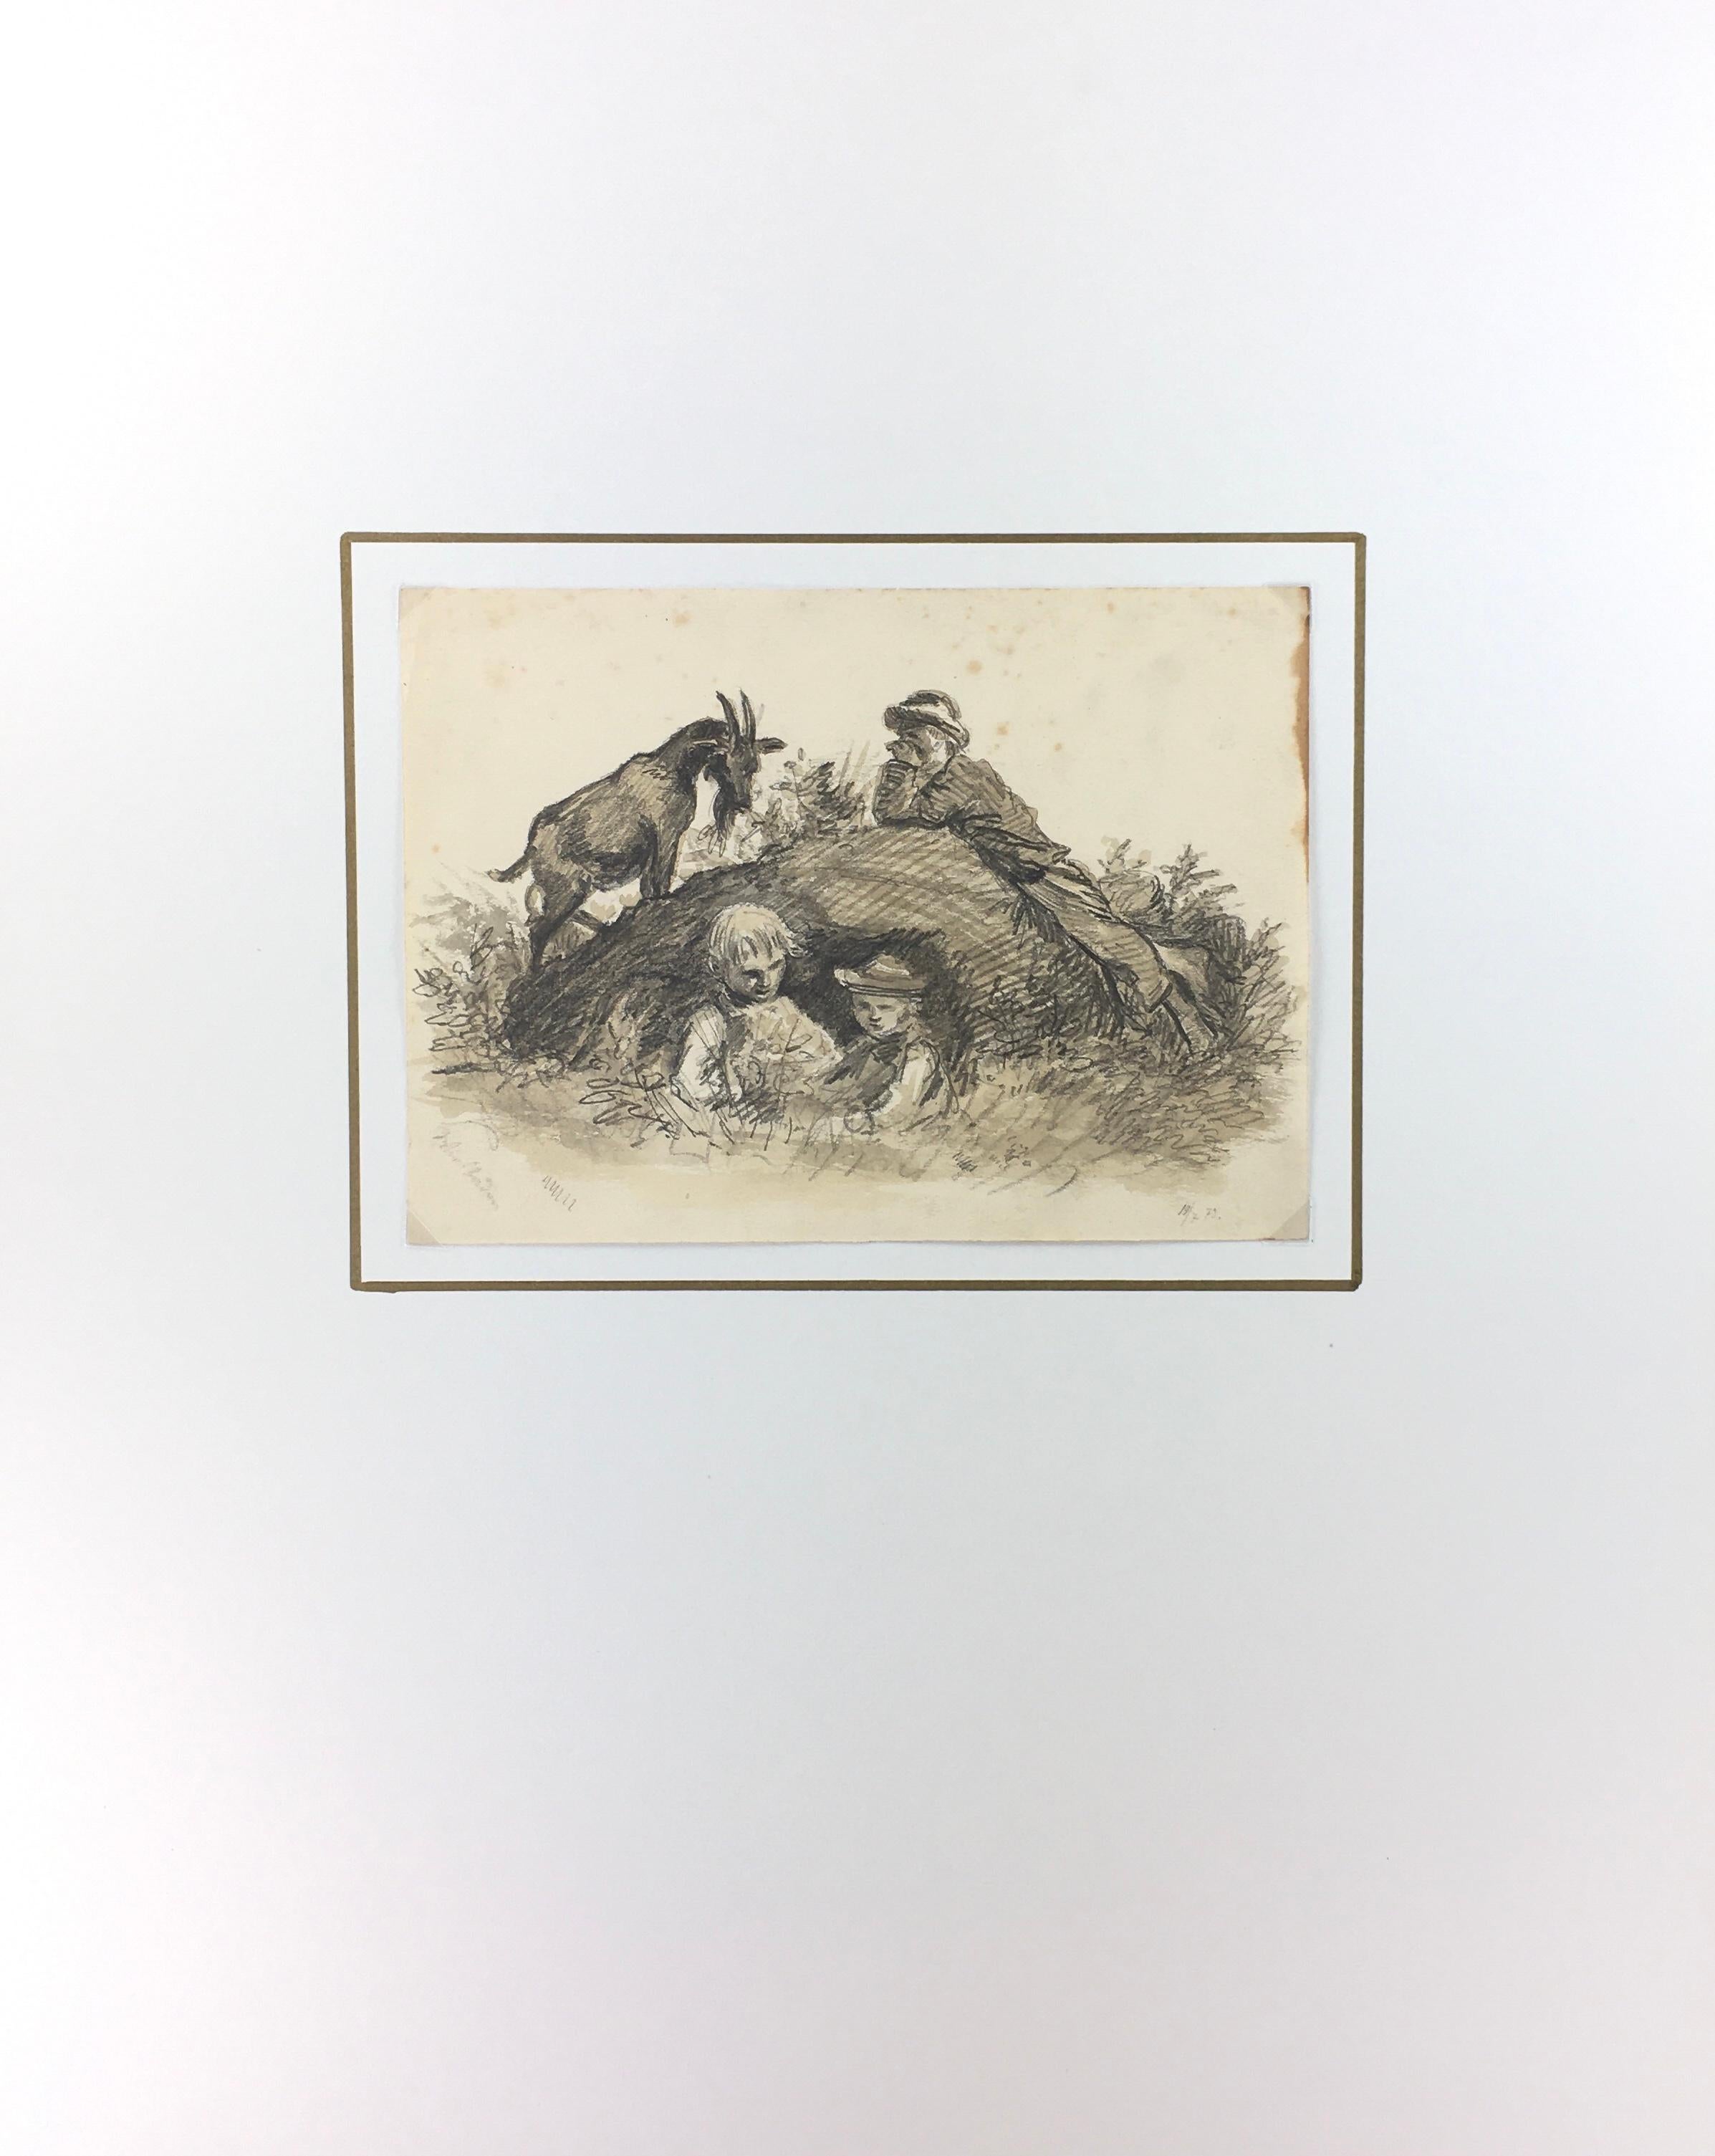 Französische Aquarell- und Bleistiftzeichnung aus dem Jahr 1873, die wahrscheinlich einen Vater, seine beiden kleinen Söhne und ihre Ziege zeigt, die in einer ruhigen ländlichen Umgebung entspannt zusammenleben. Die Kinder scheinen am Fuße eines